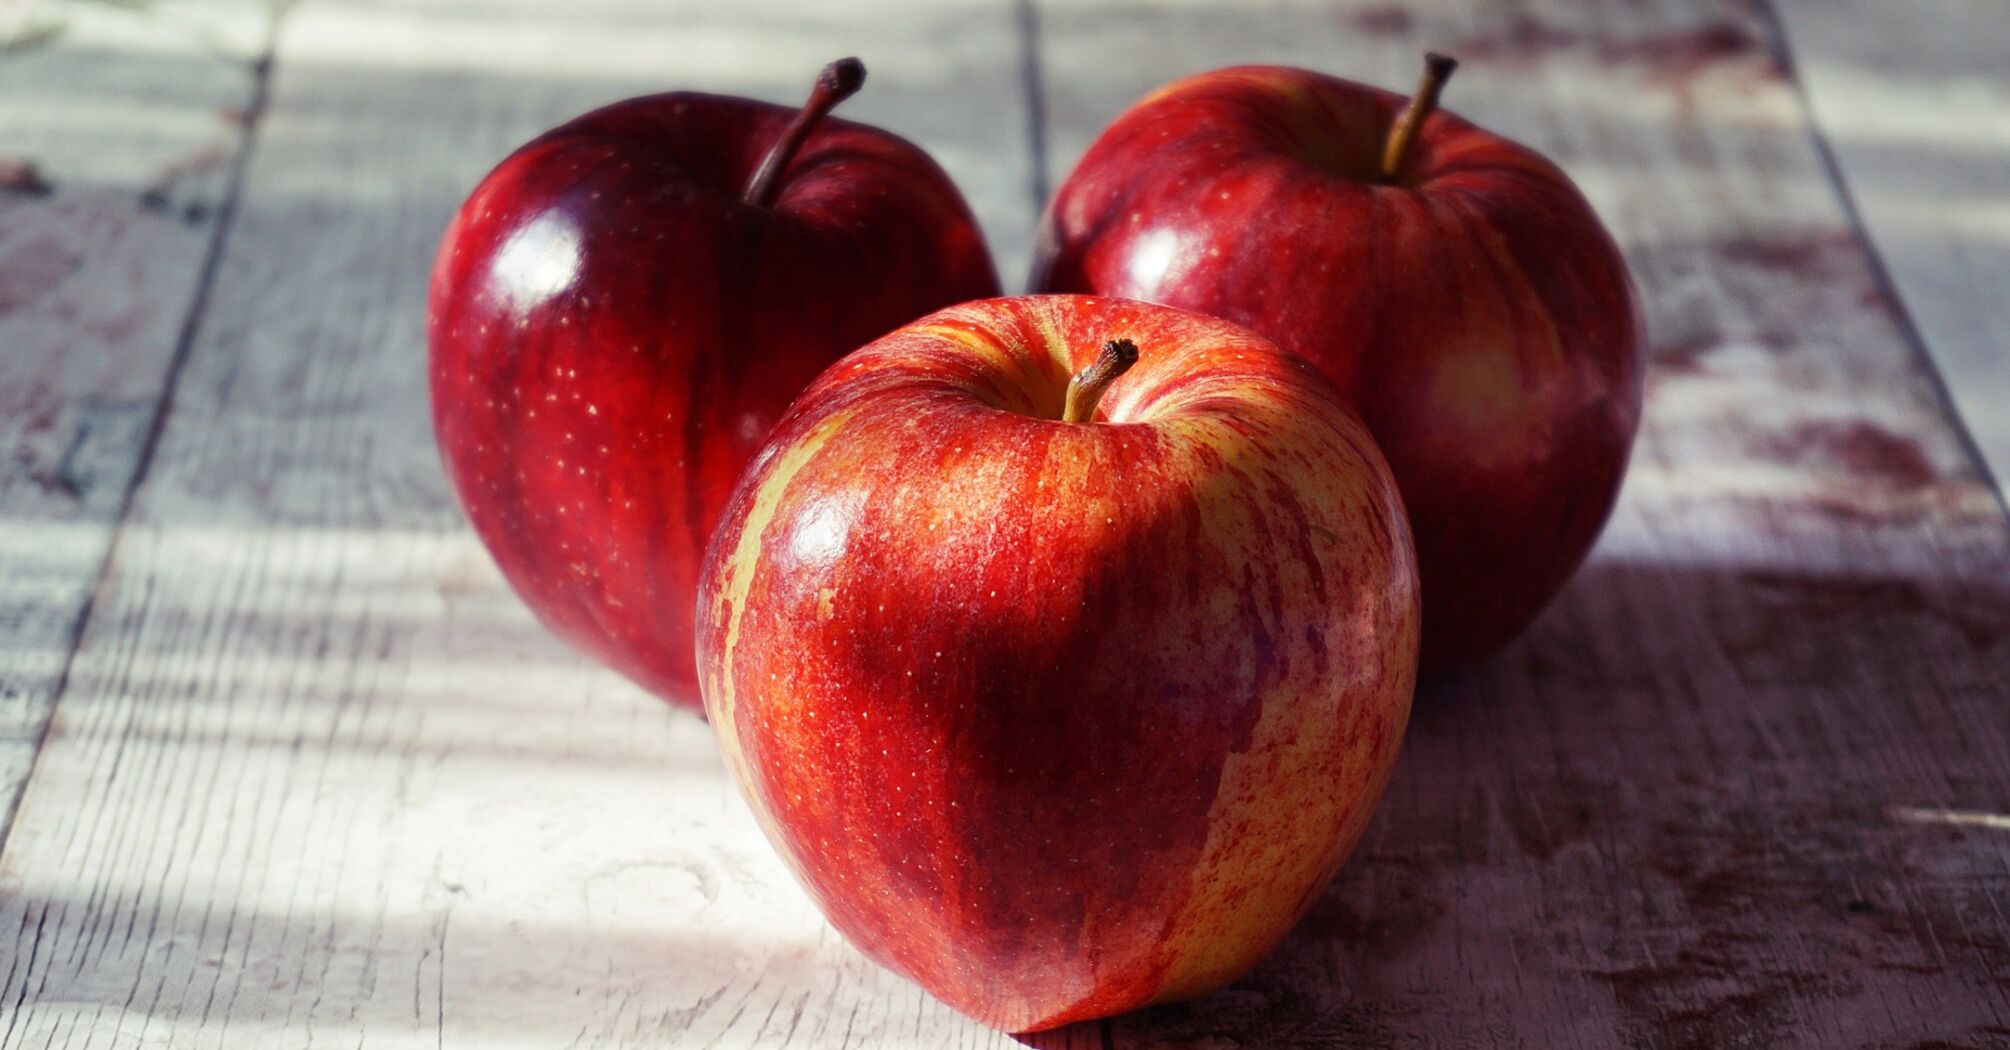 Чи варто щодня їсти яблука: що каже наука та чи радять лікарі